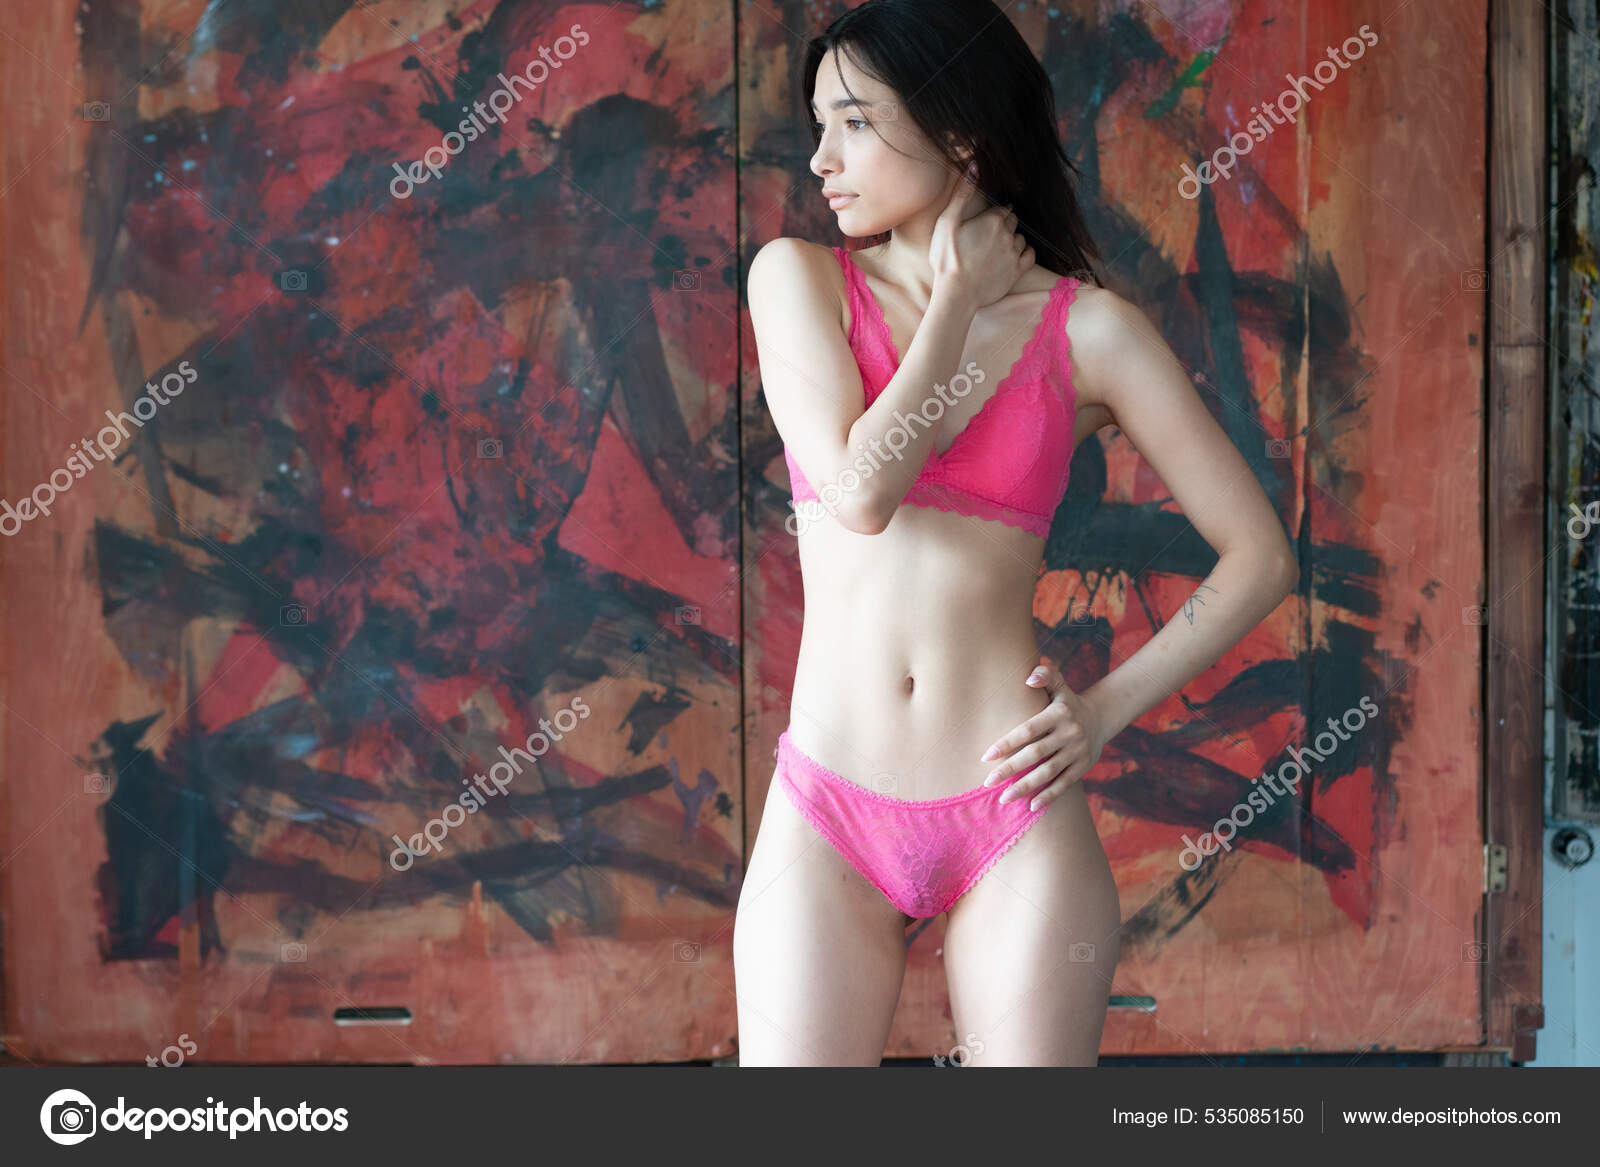 https://st.depositphotos.com/10086424/53508/i/1600/depositphotos_535085150-stock-photo-young-beautiful-woman-posing-red.jpg